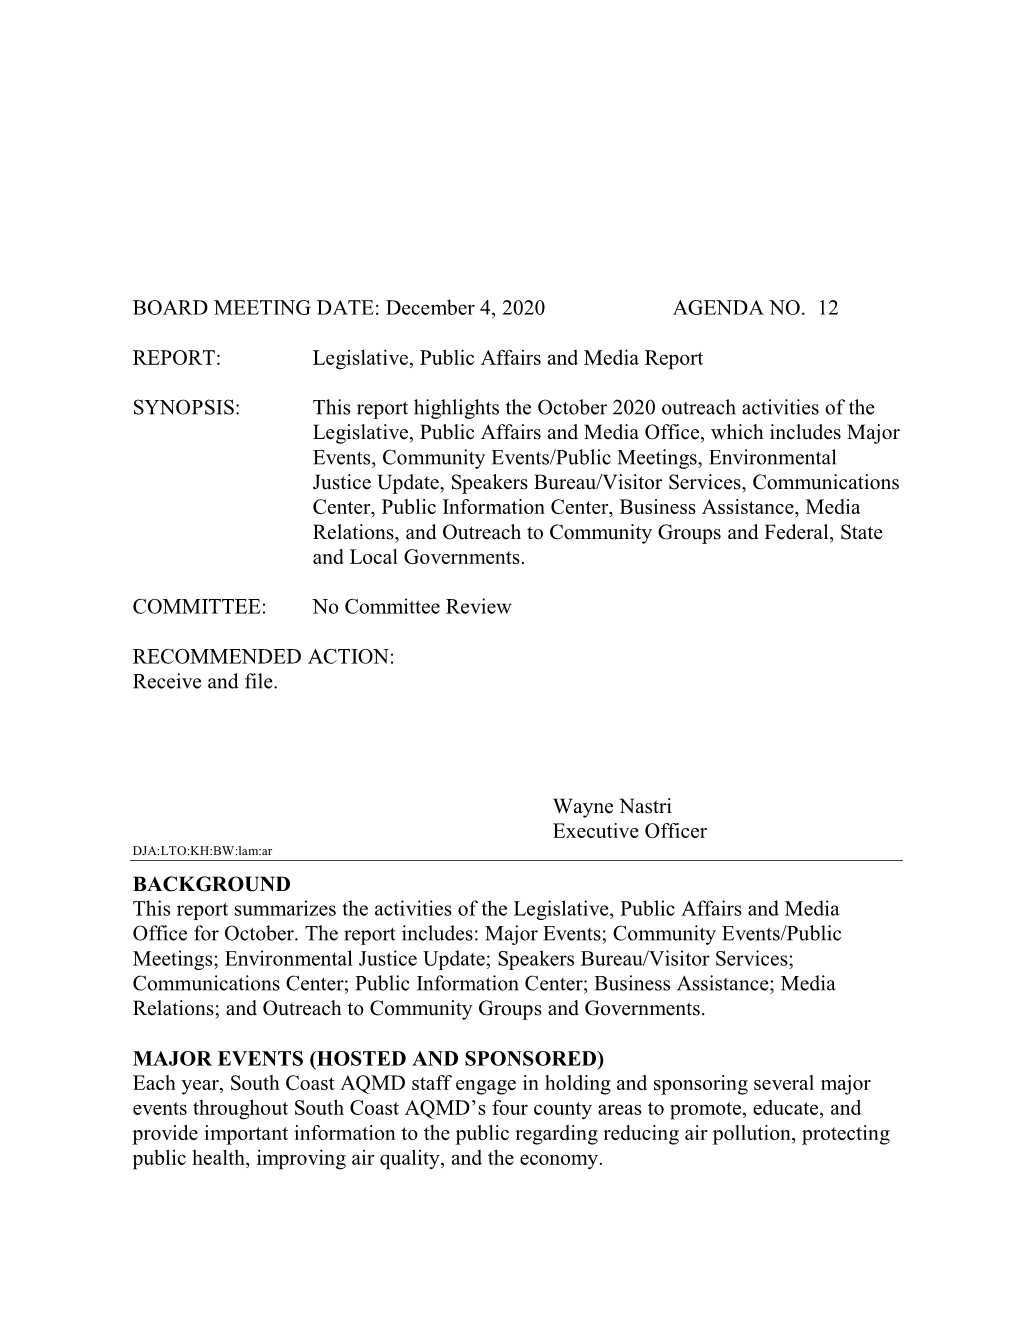 12. Legislative, Public Affairs, and Media Report